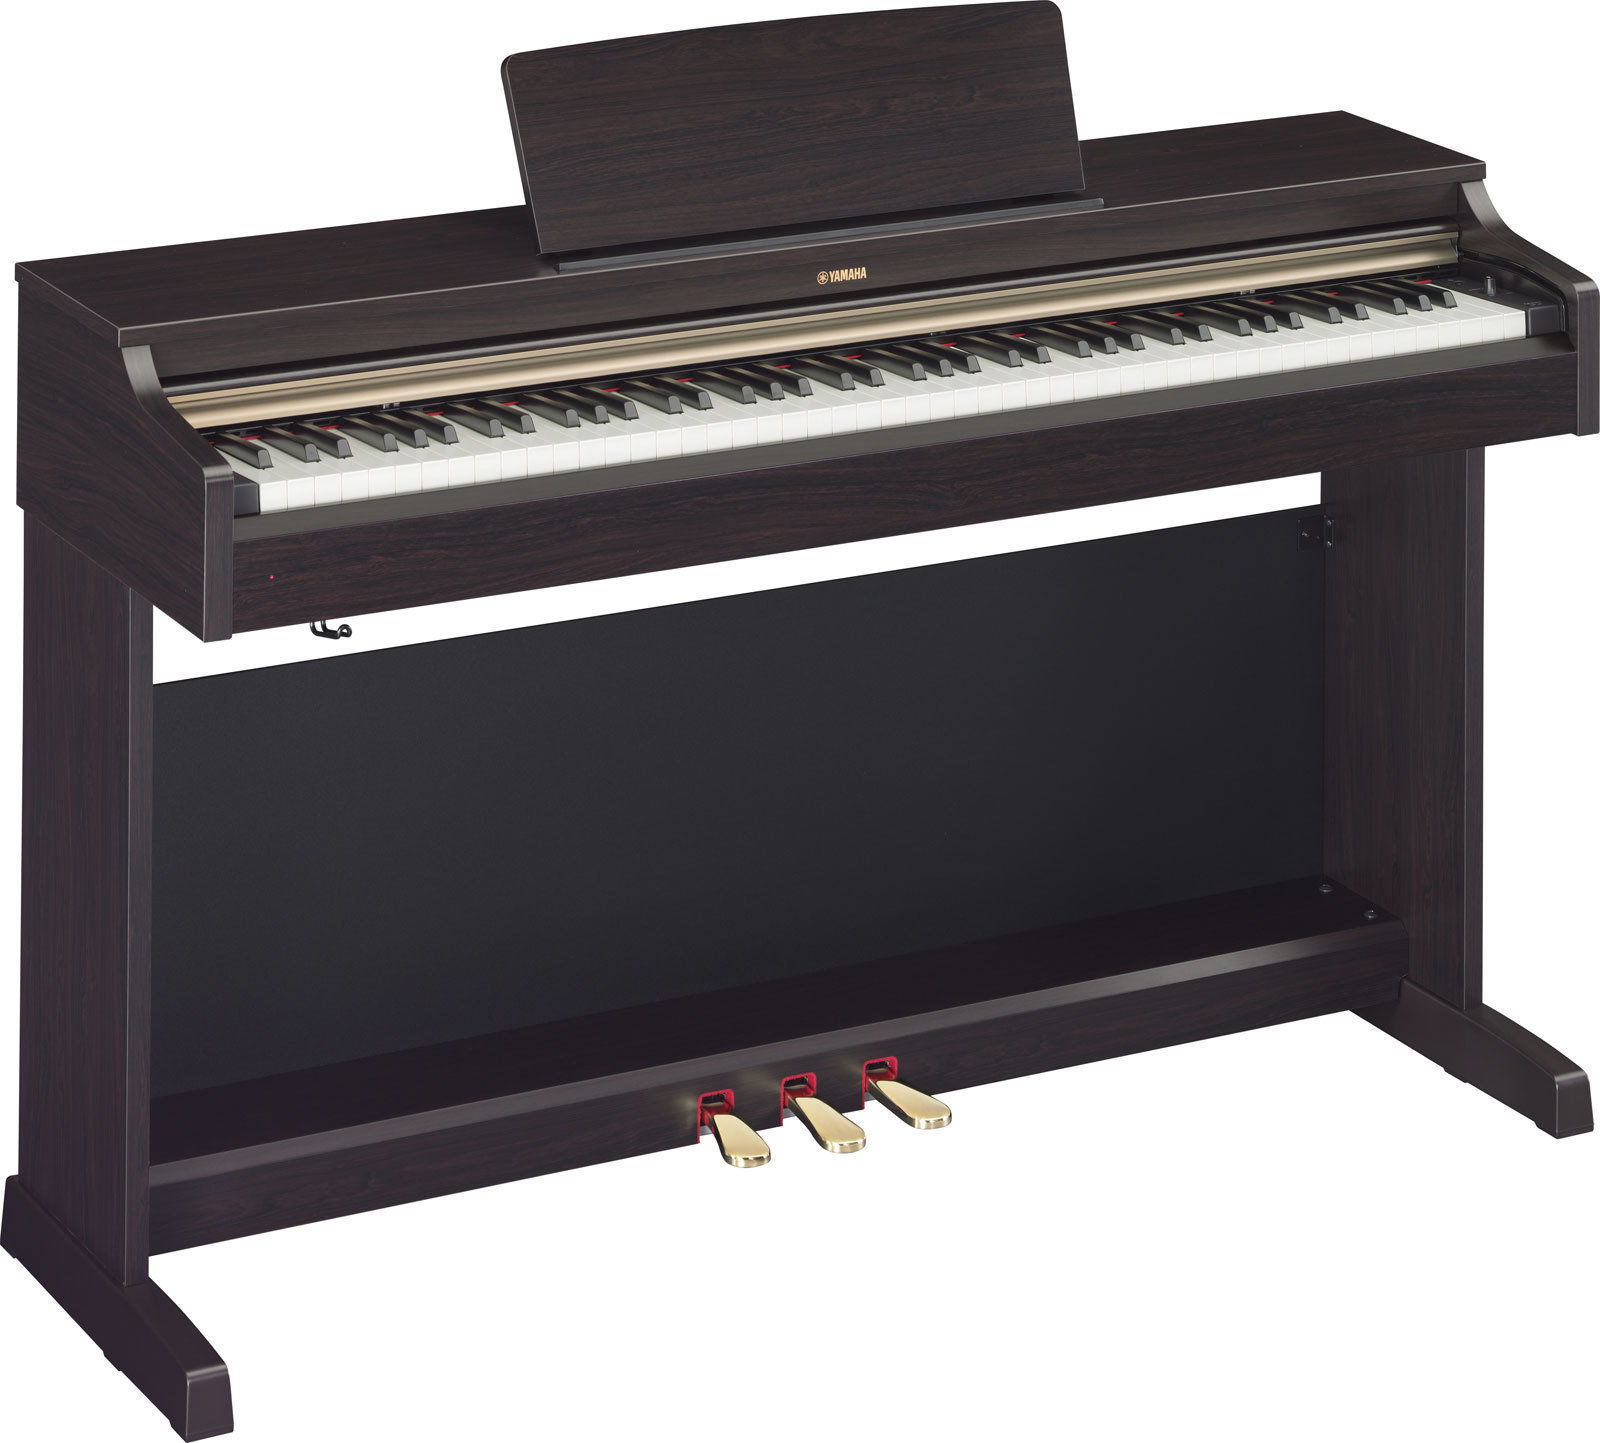 Ψηφιακό Πιάνο Yamaha YDP 162 R Arius